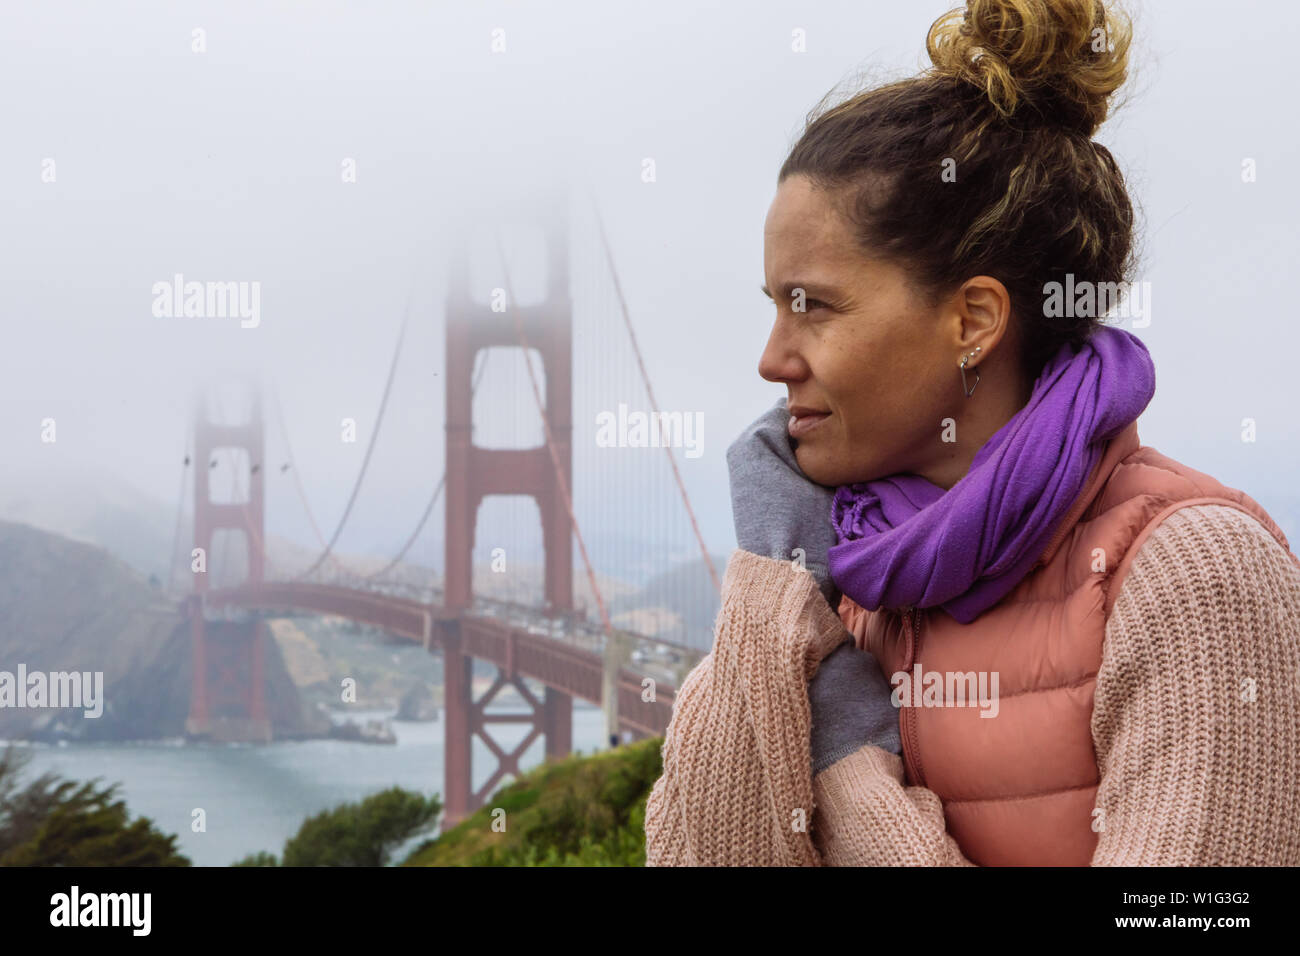 Lockiges Haar kaukasische Frau in den Dreißigern mit einem Brötchen, das mit der Golden Gate Bridge in San Francisco, Kalifornien, USA, posiert Stockfoto